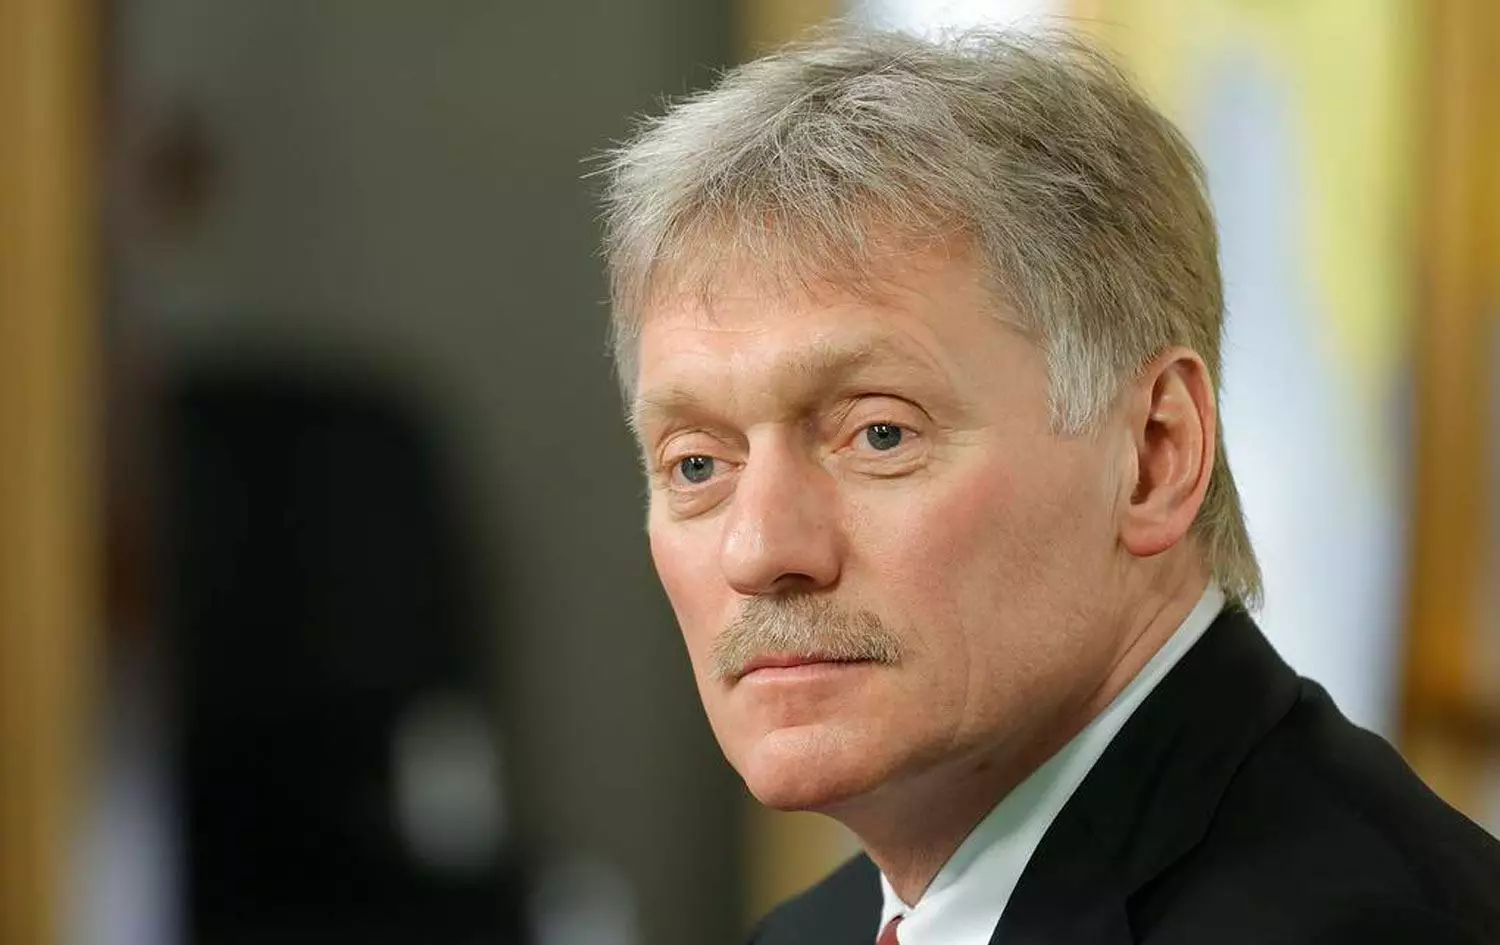 Peskov: "Crocus City Hall”un gələcək taleyi barədə danışmaq tezdir